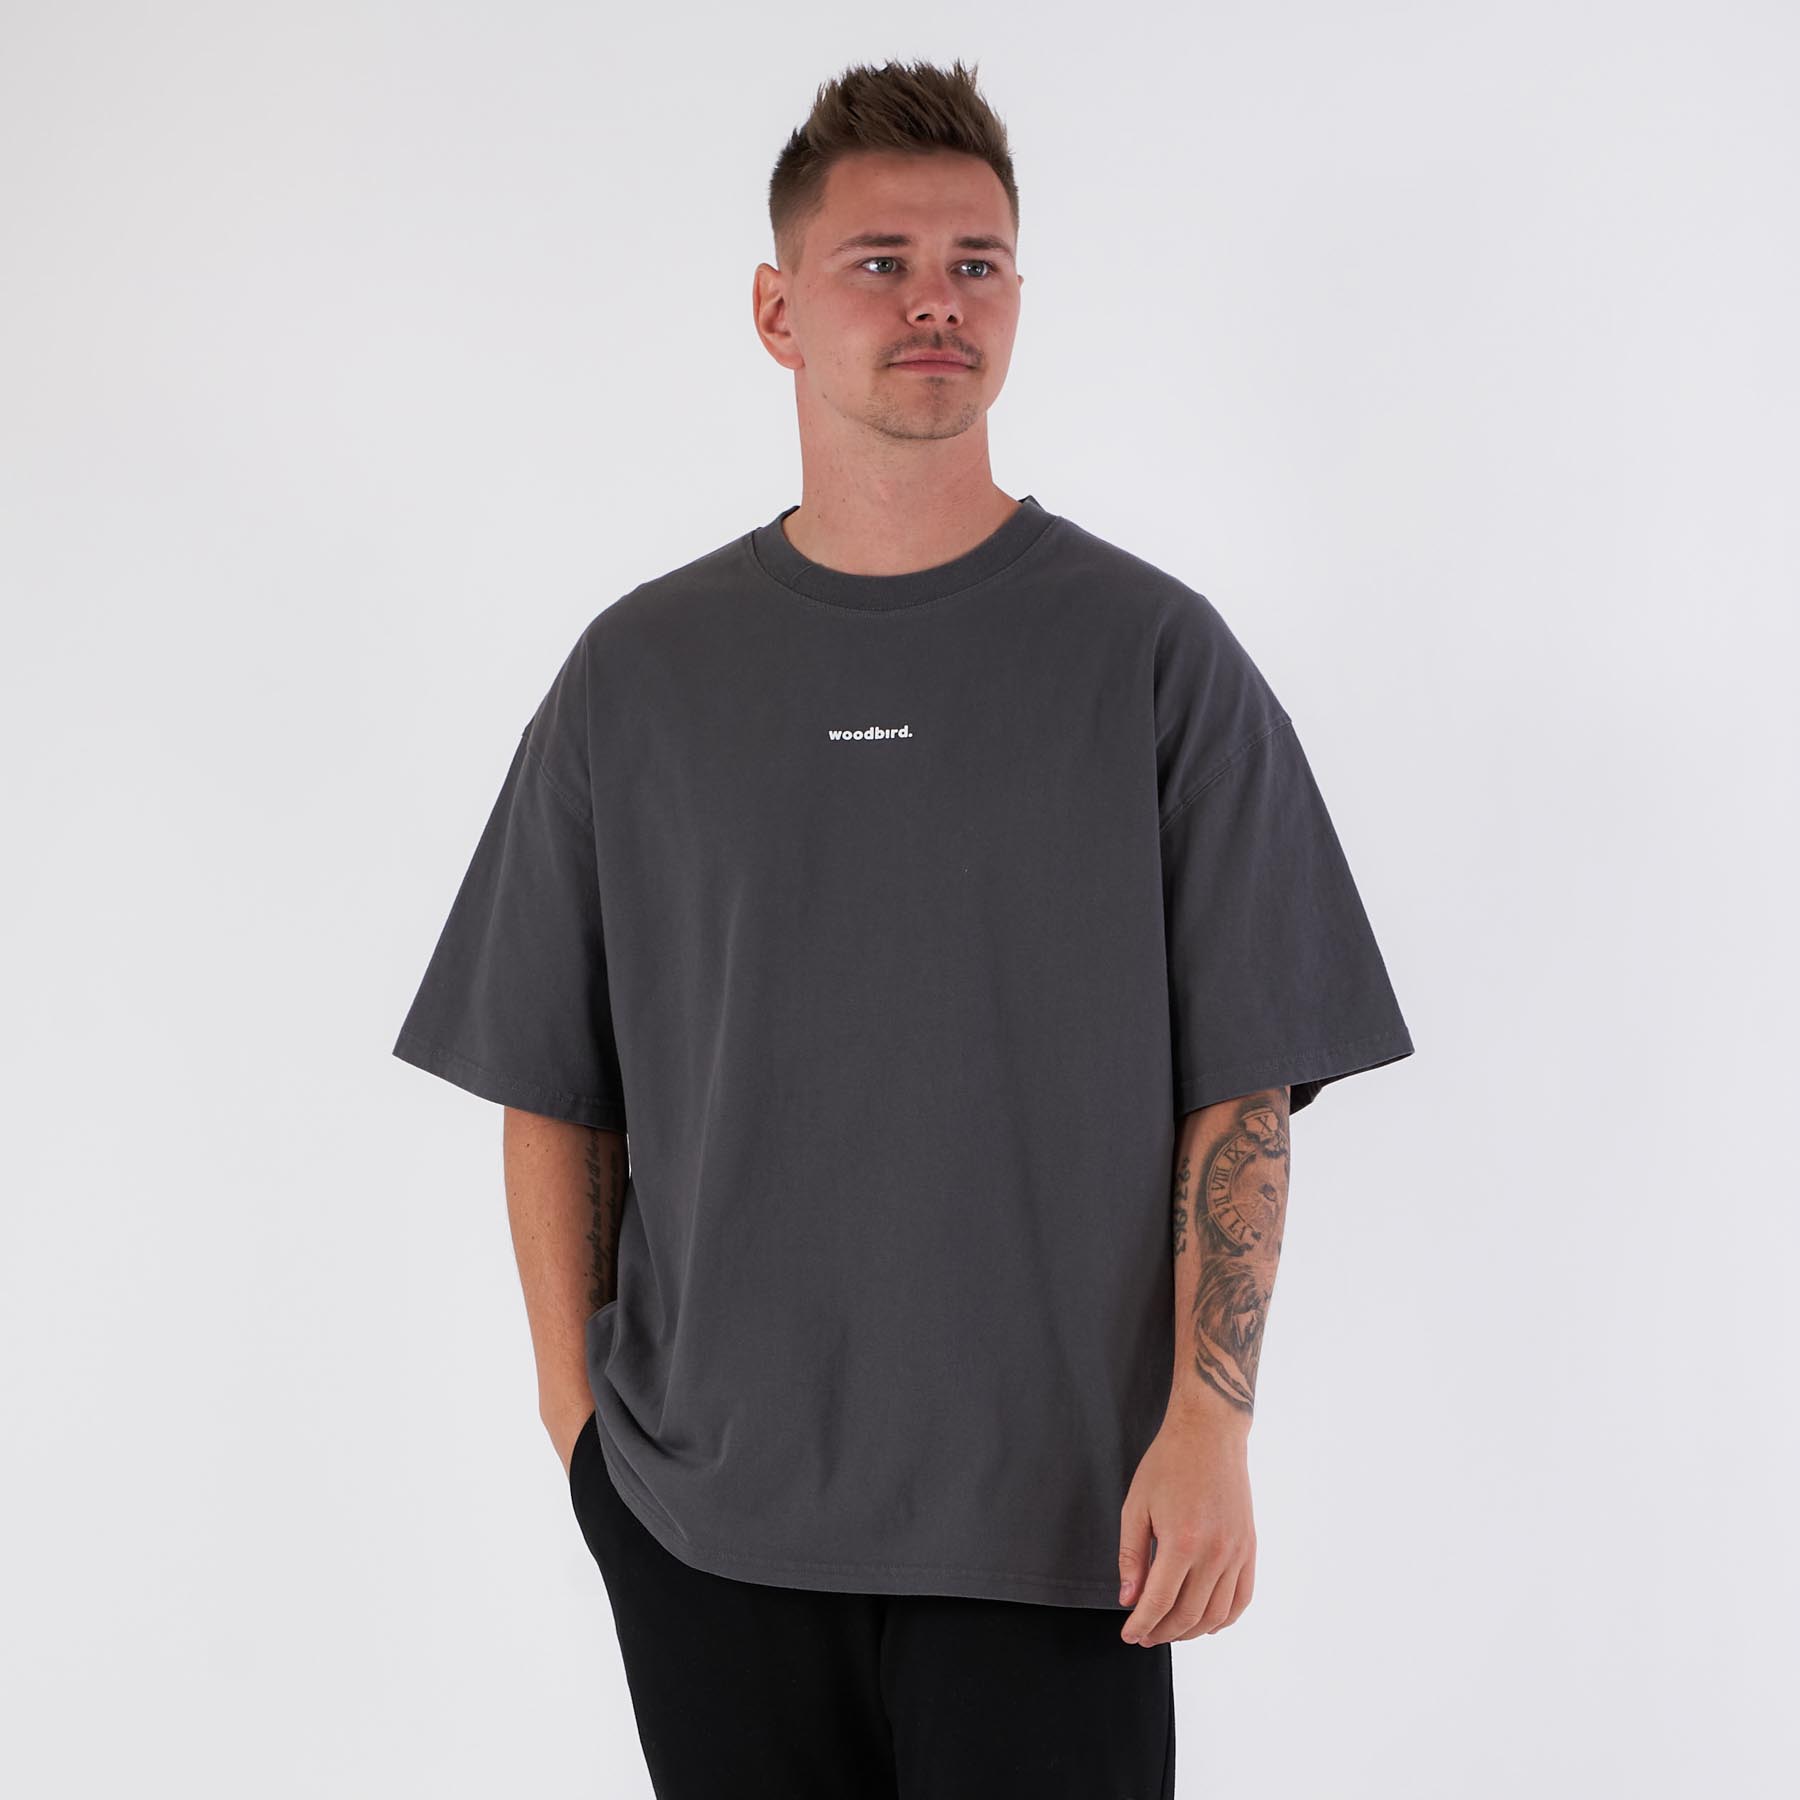 Woodbird - Bose mock tee - T-shirts til mænd - Grå - XXL